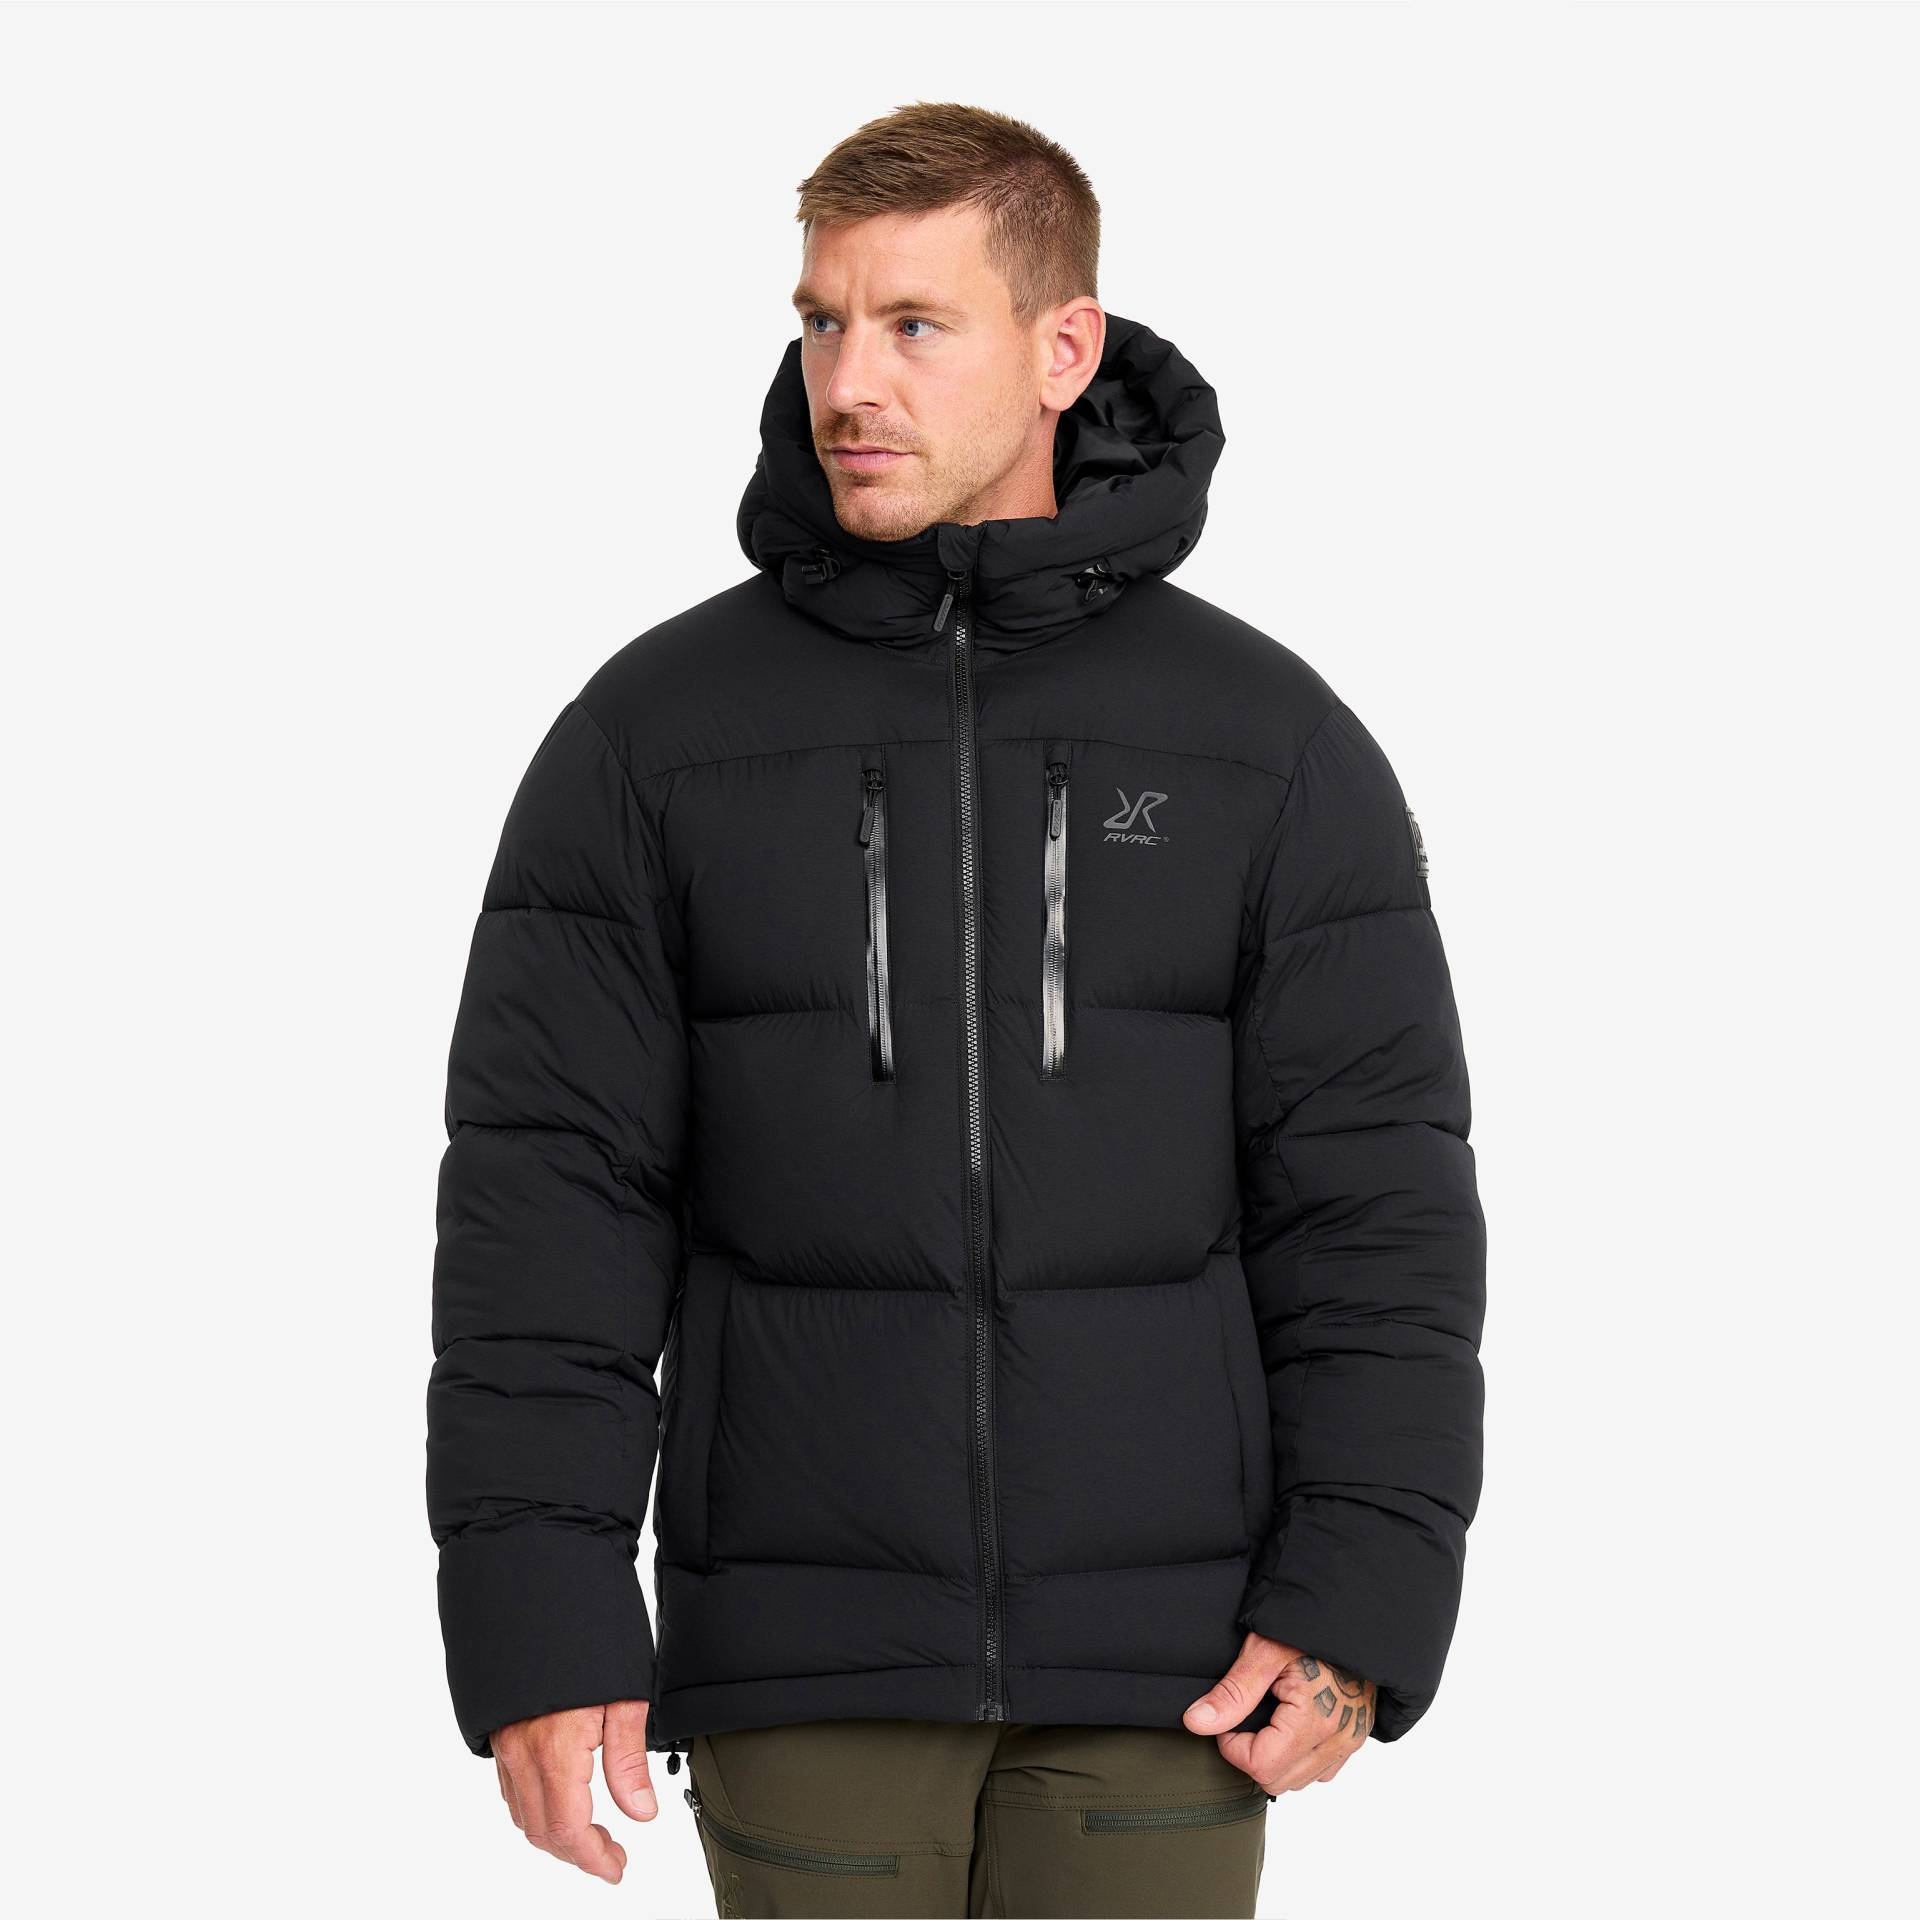 Flexpedition Down Jacket Herren Black, Größe:2XL - Winterjacken von RevolutionRace